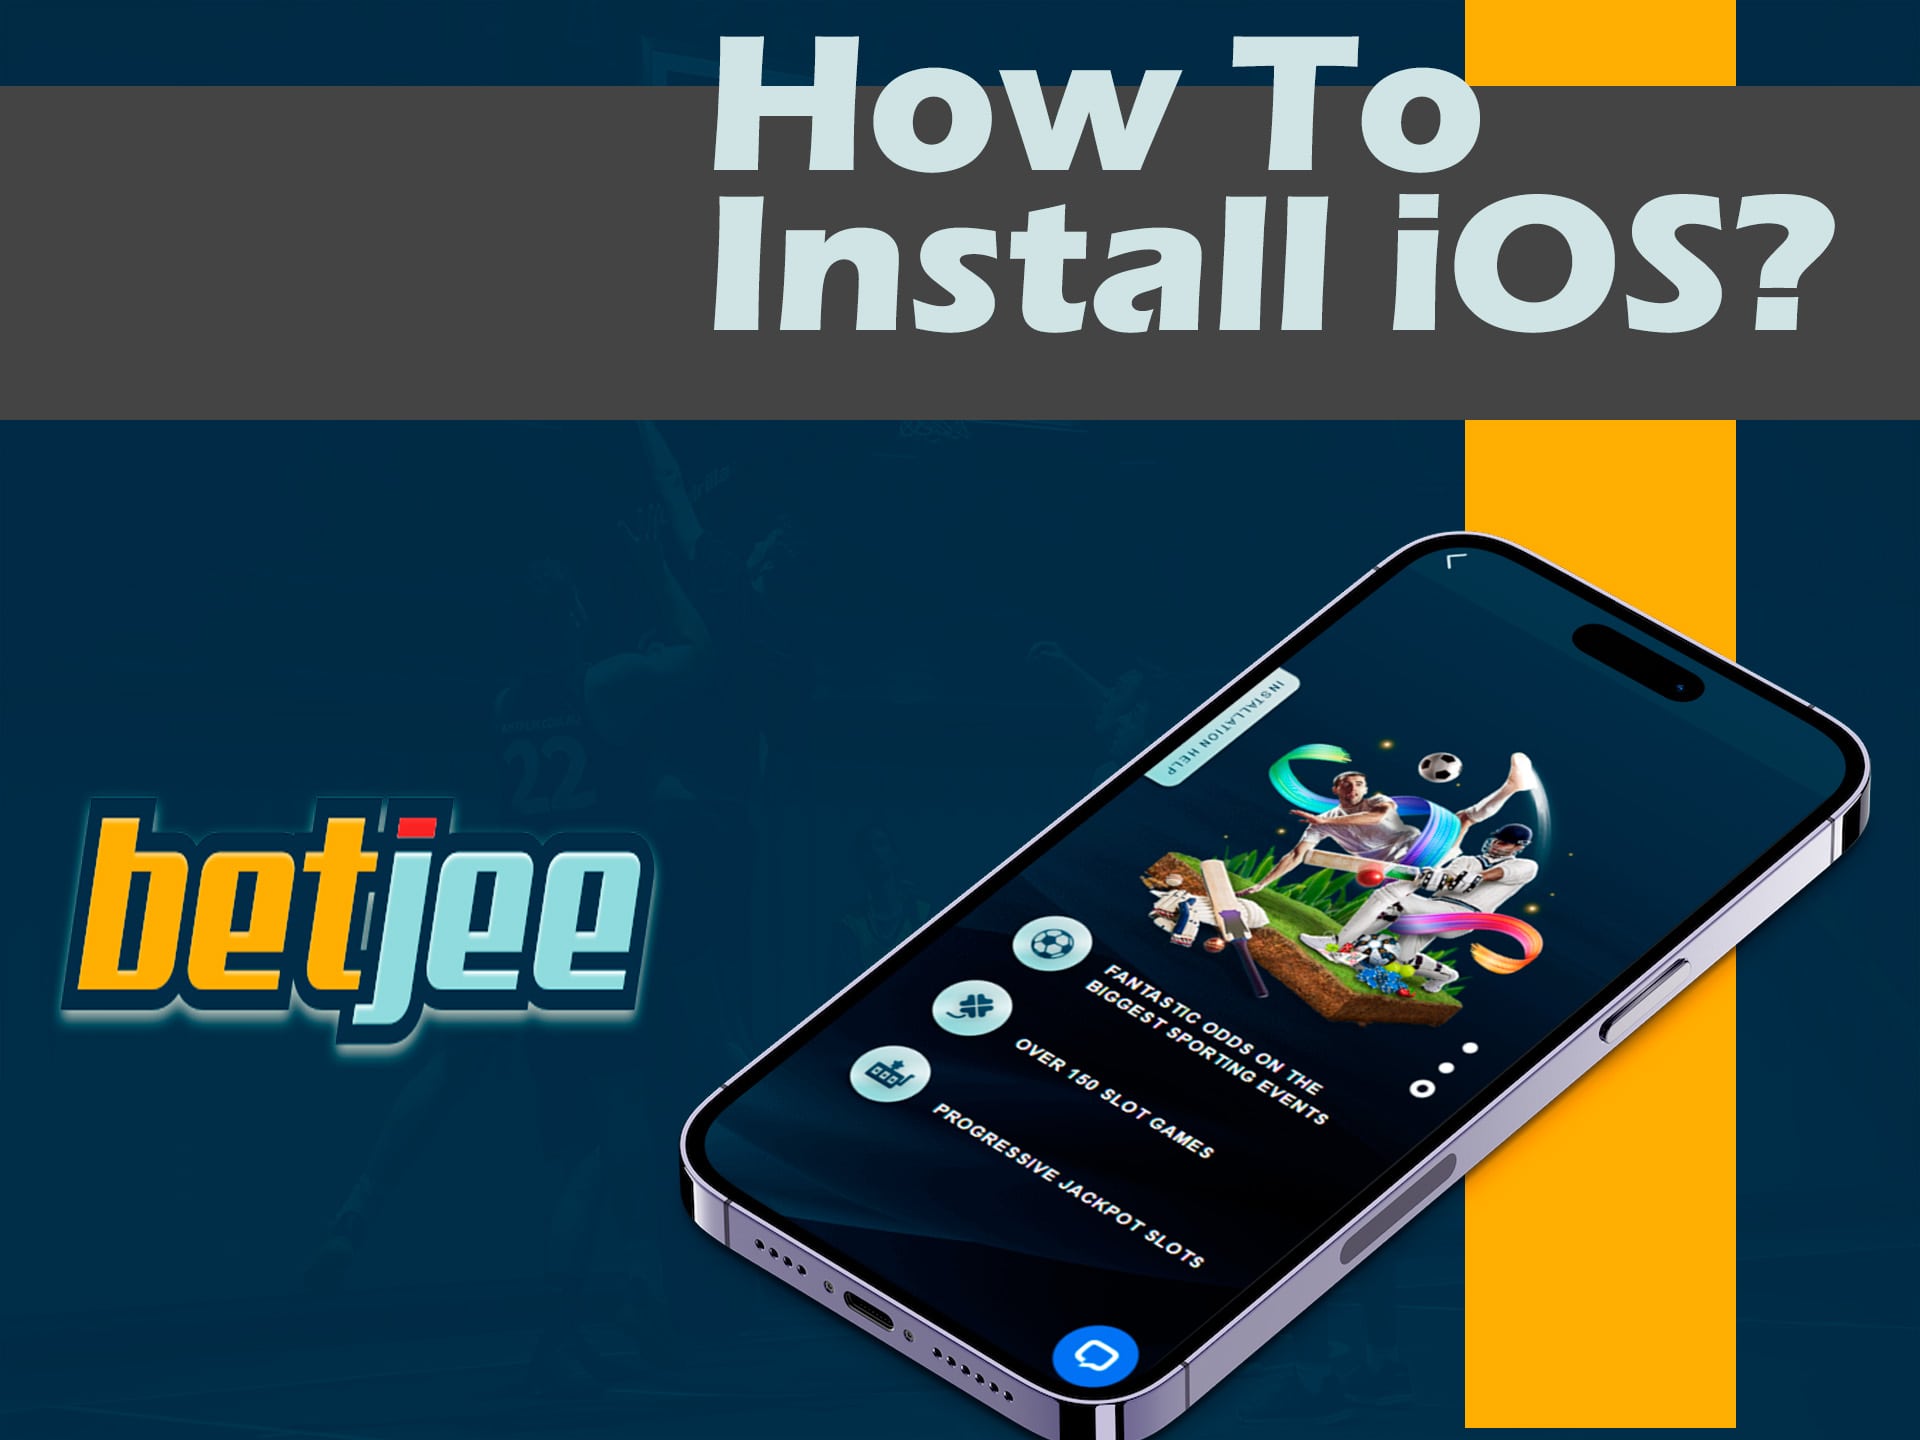 how to install ios betjee app